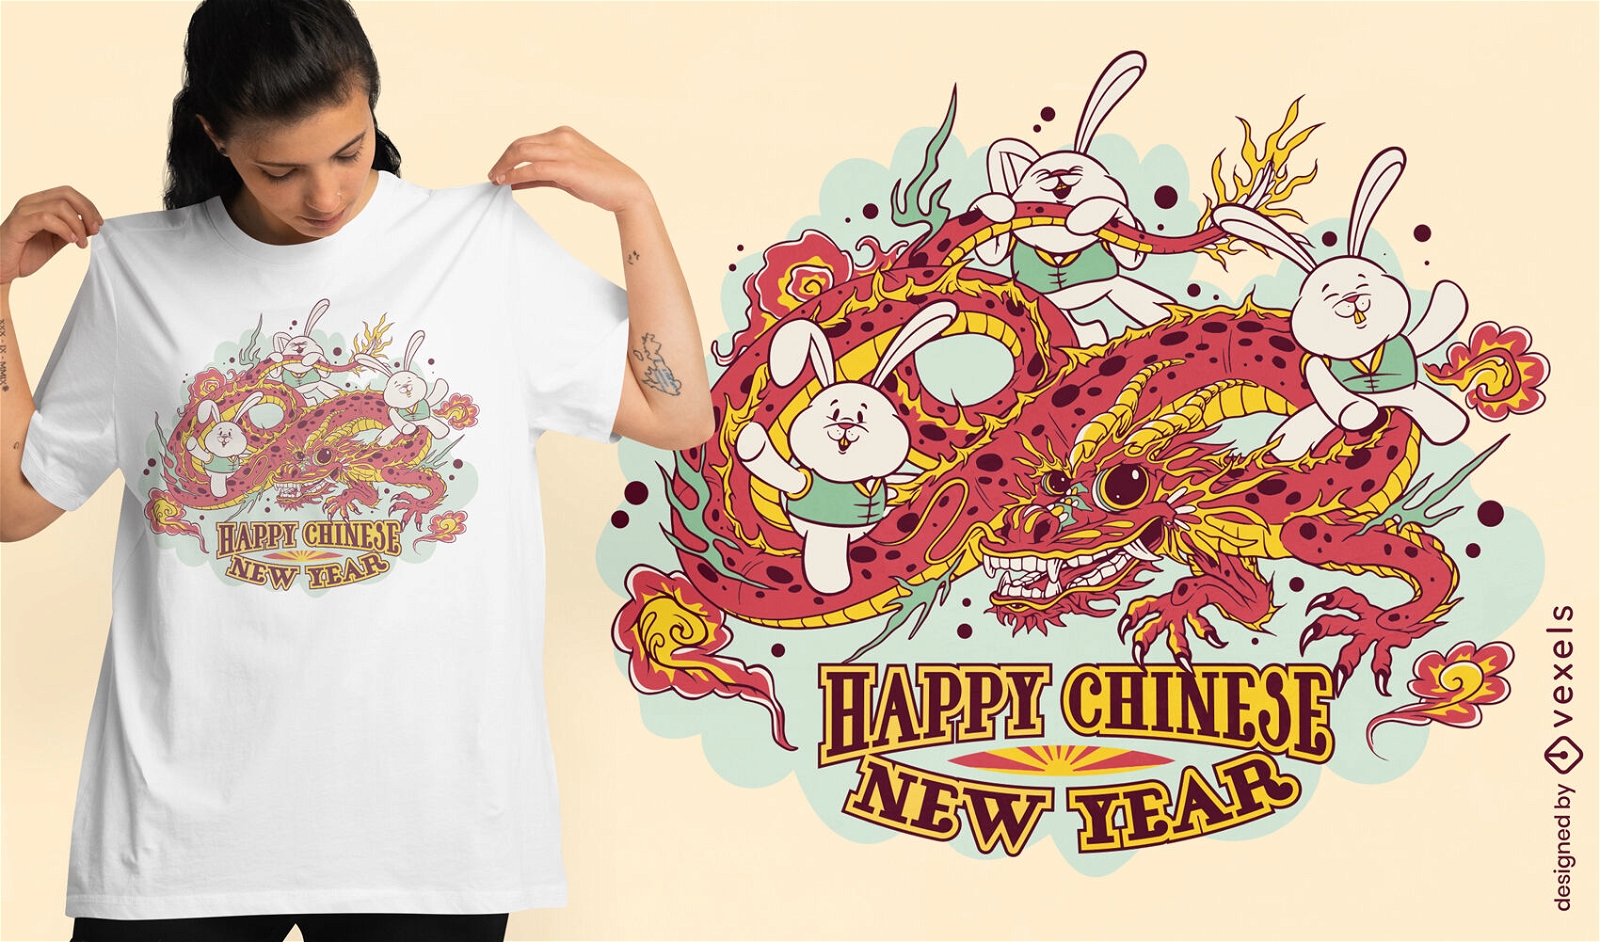 Coelhinhos do ano novo chinês no design da camiseta do dragão